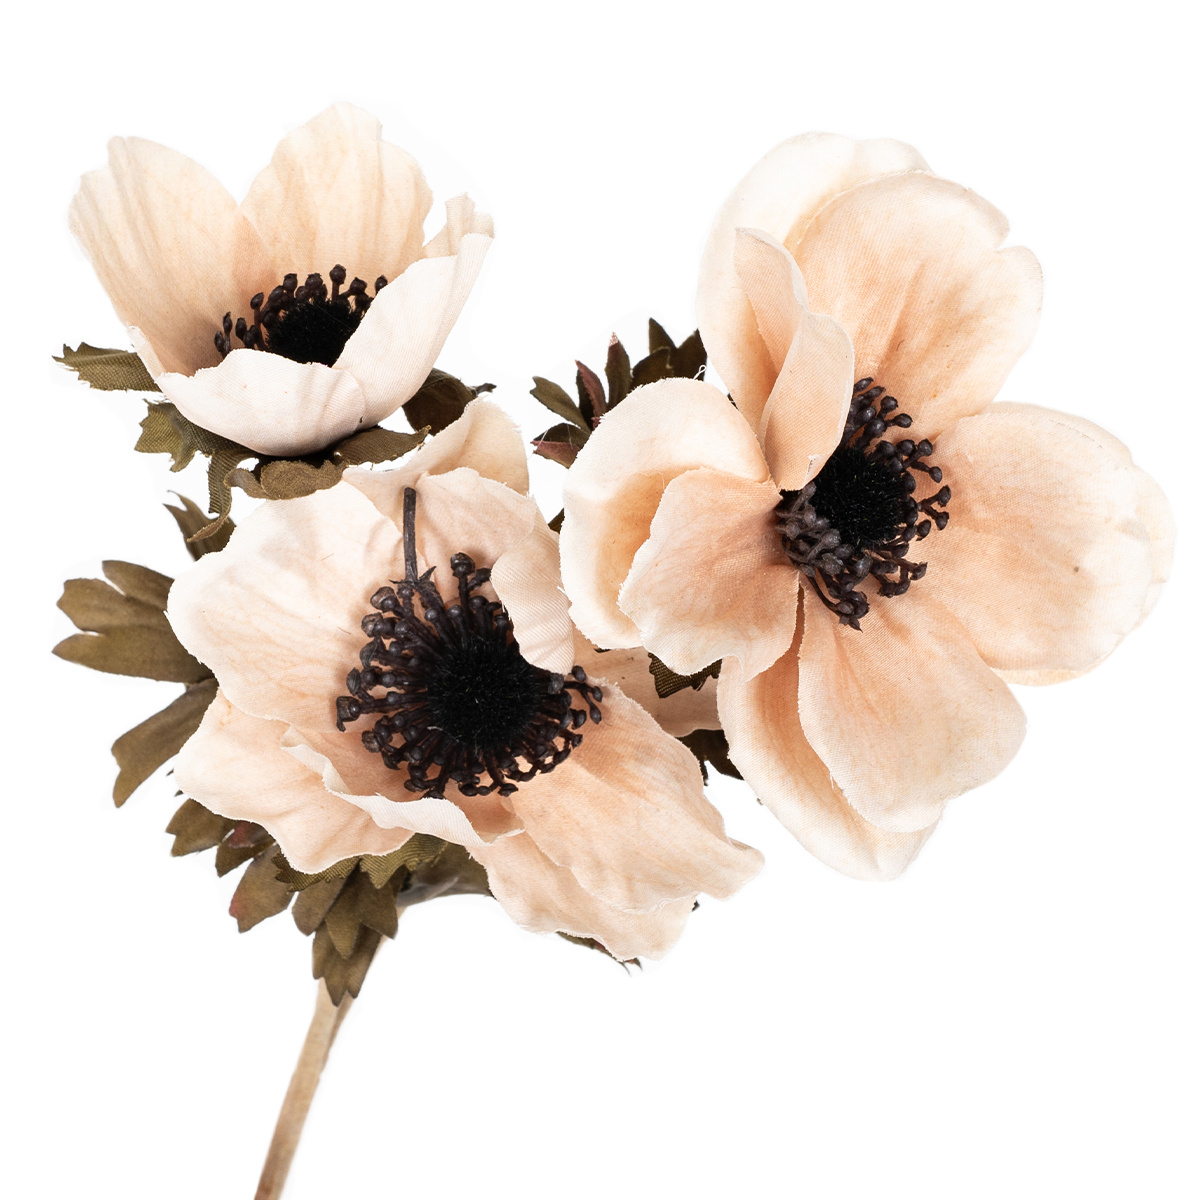 Koronás szellőrózsa művirág krém színű, 3 virág, 56 x 17 cm